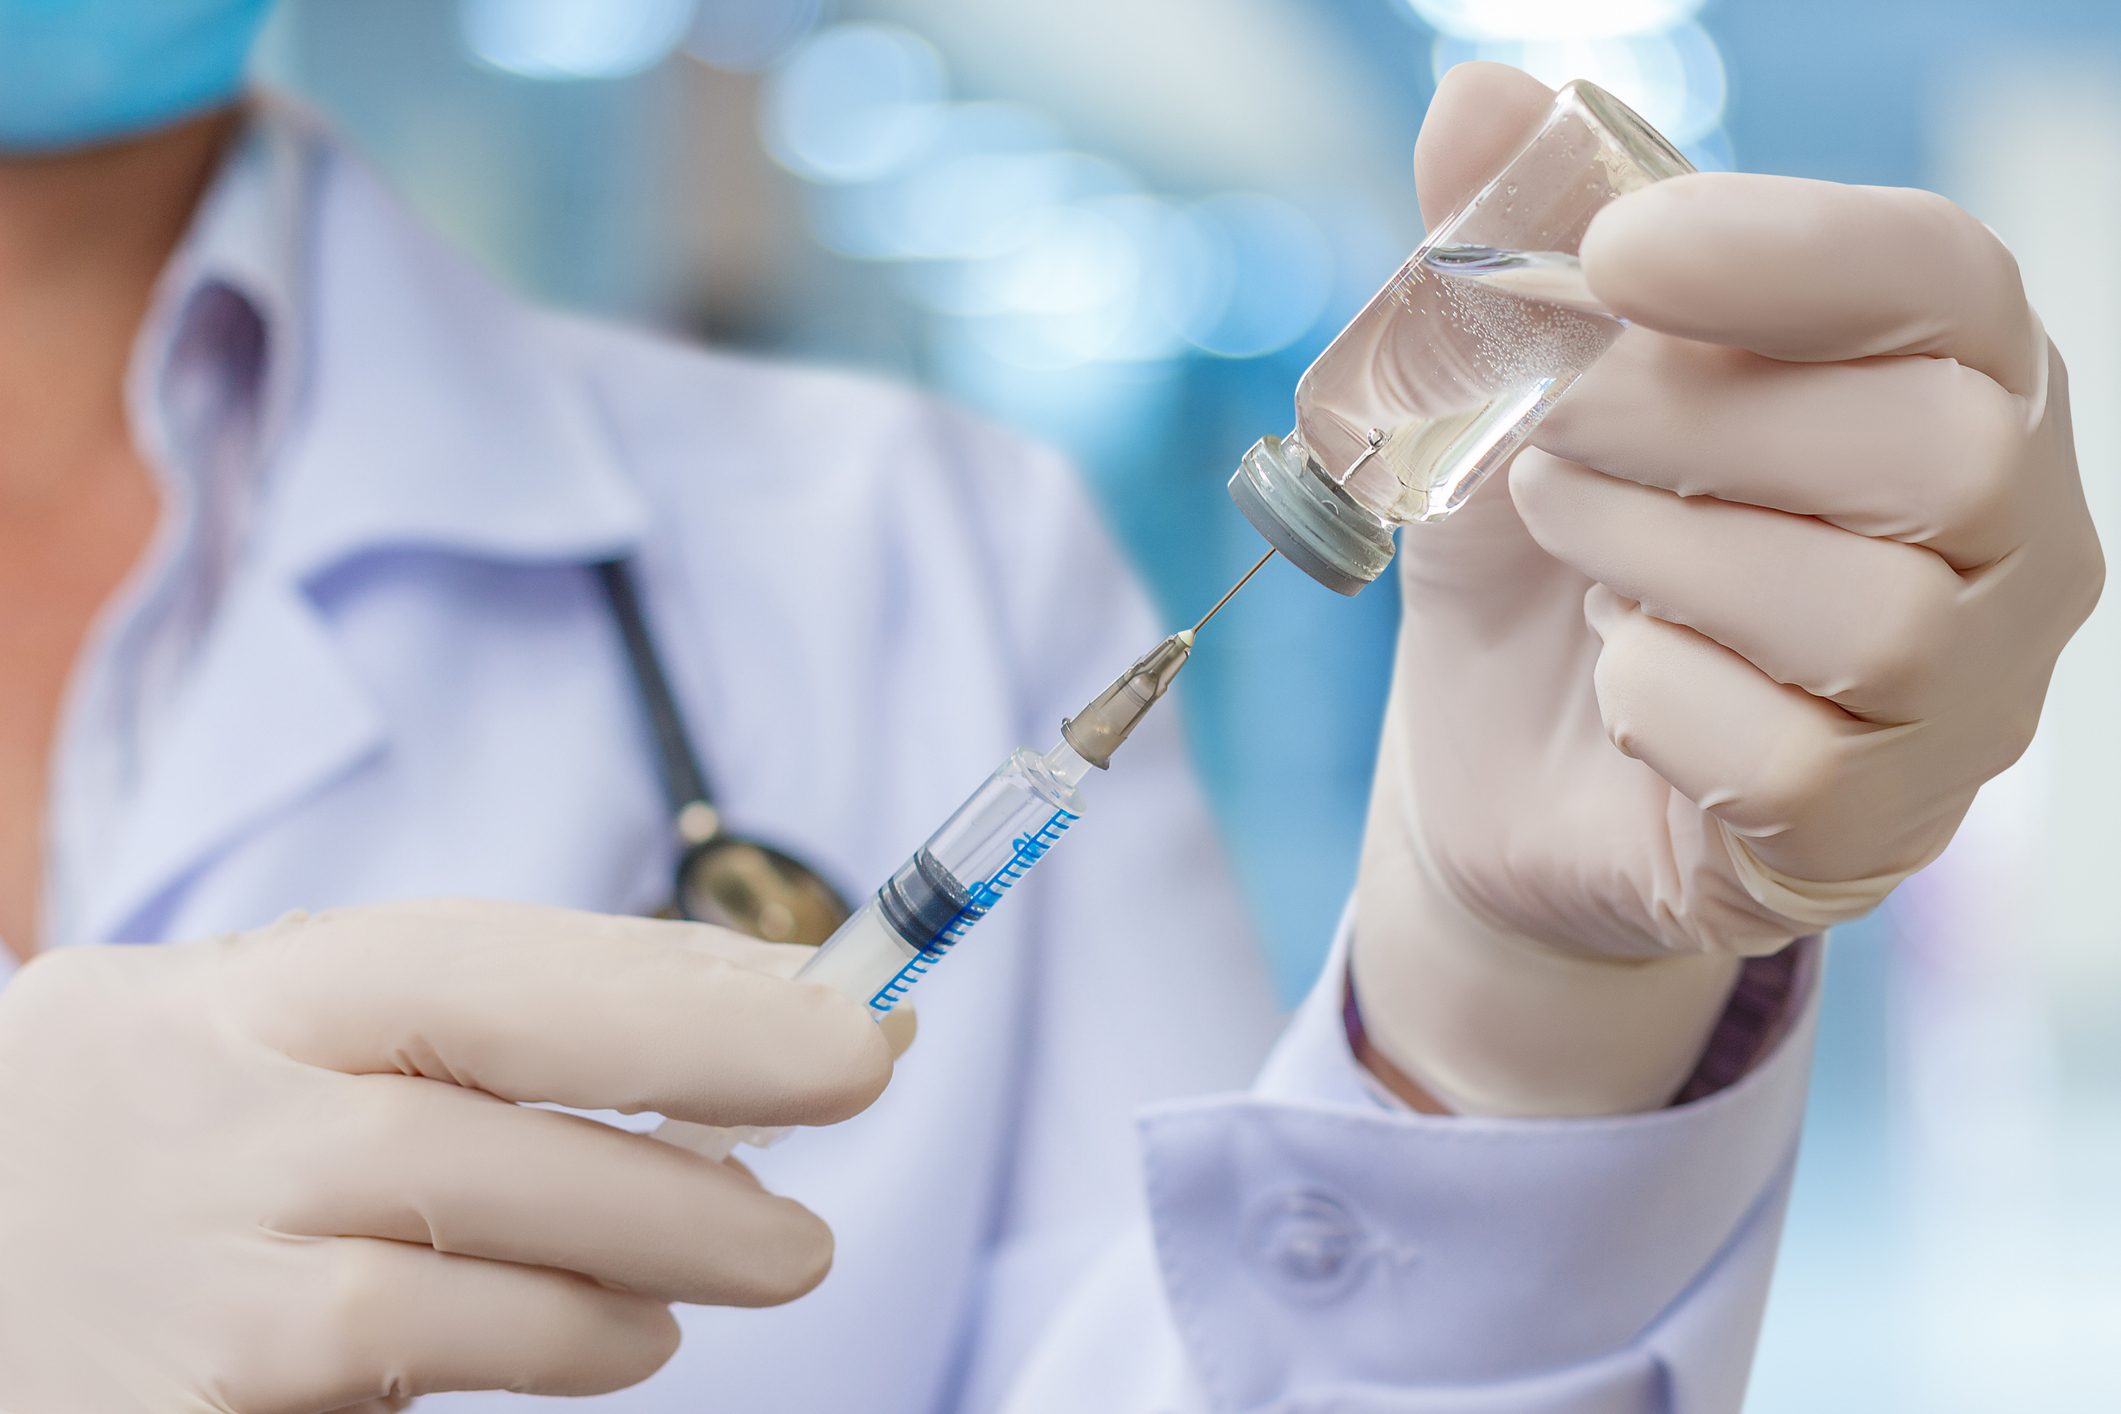 Vaccinazioni antinfluenzali in farmacia, sì all’accordo integrativo